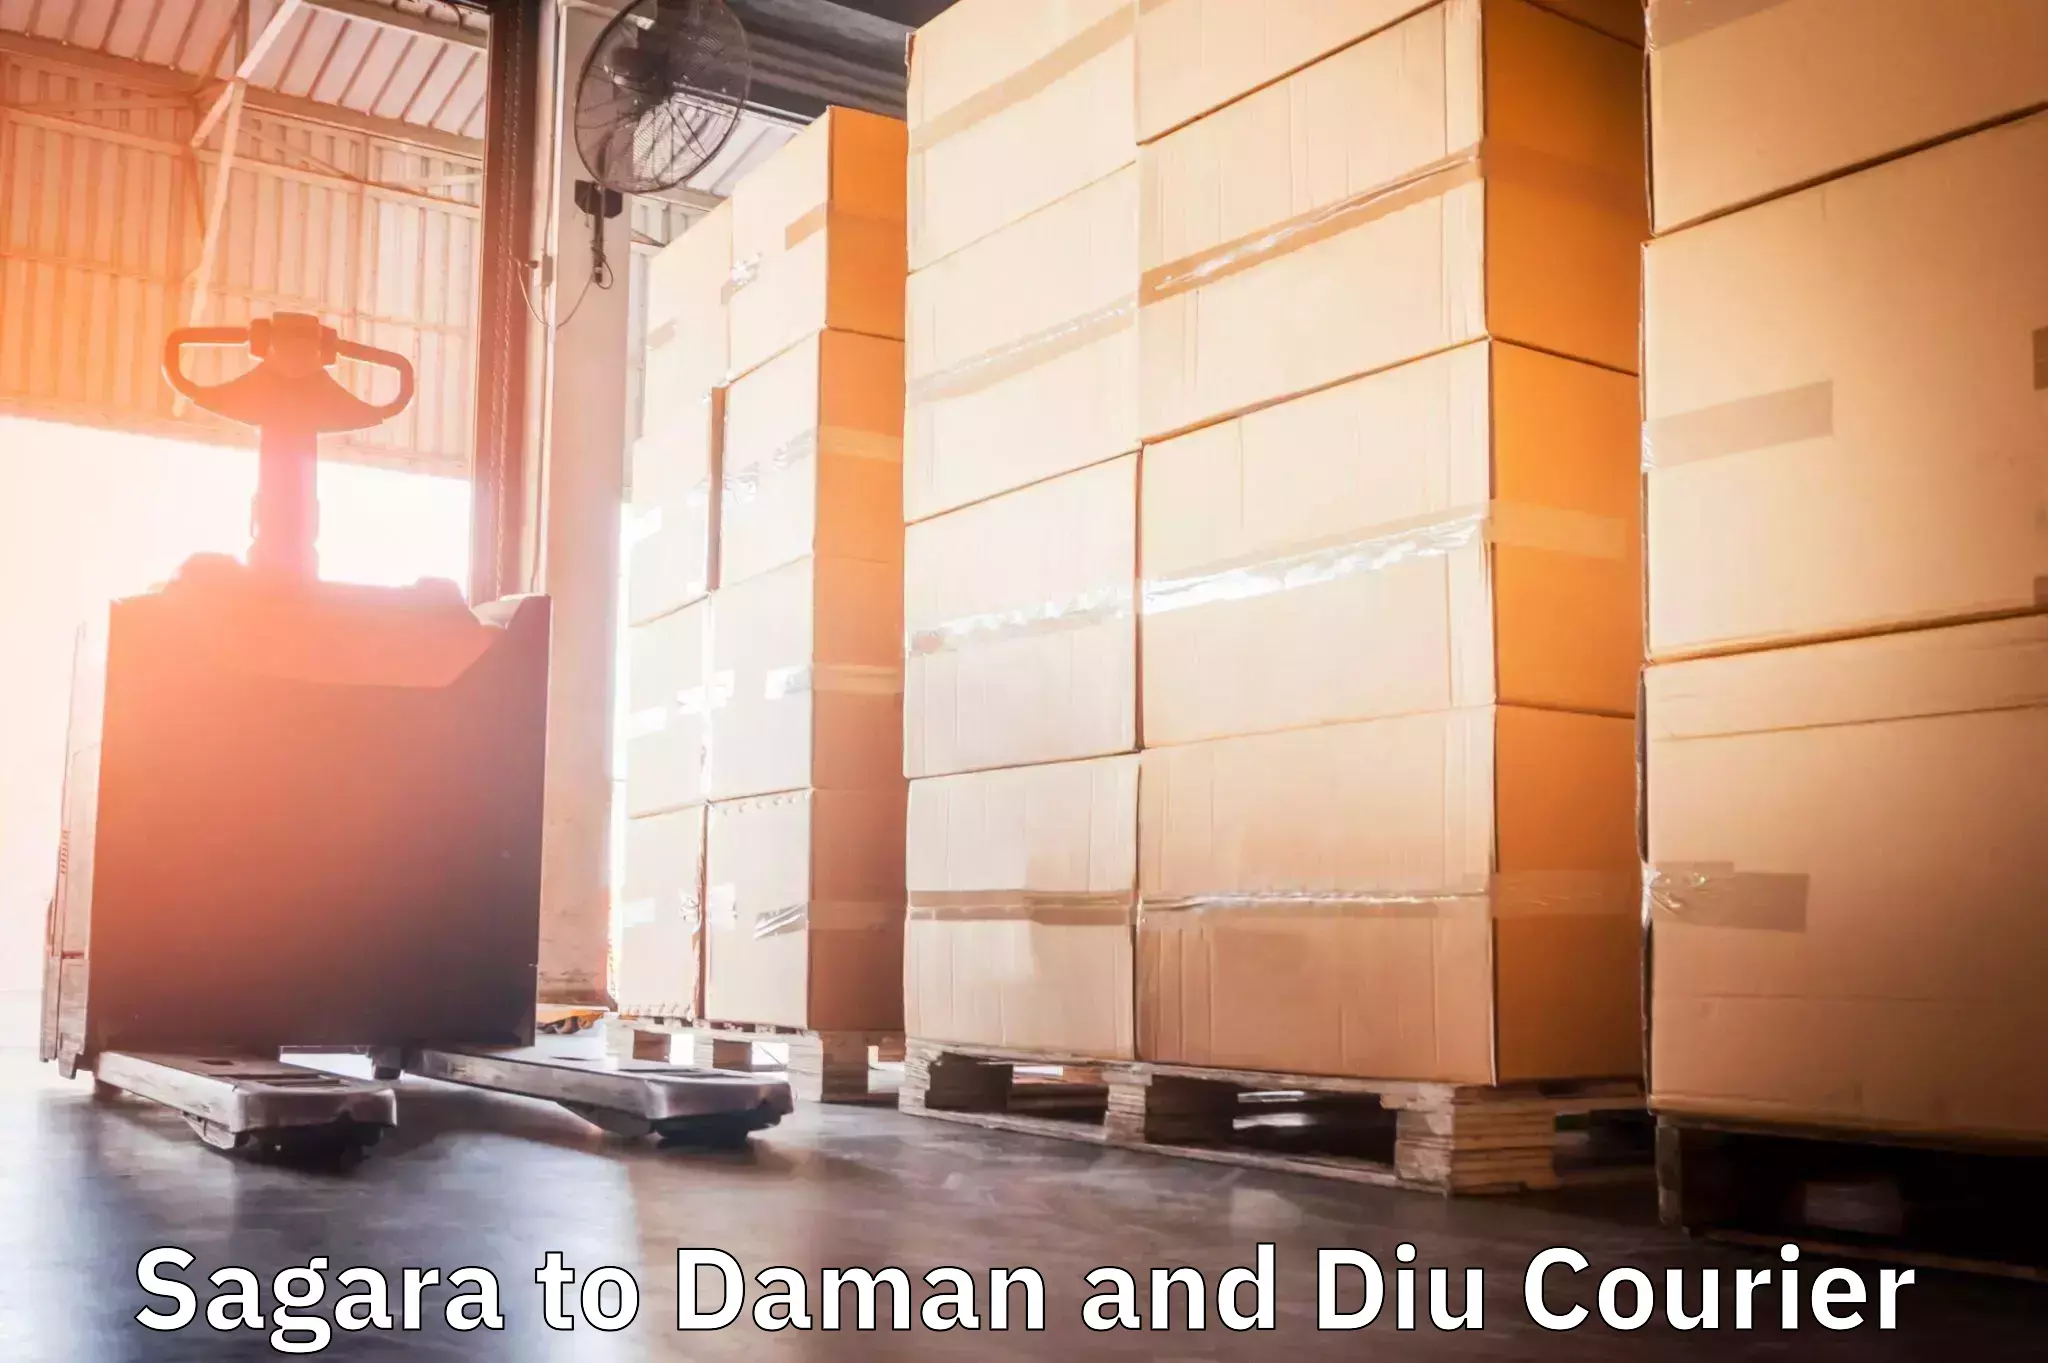 Efficient freight service Sagara to Daman and Diu